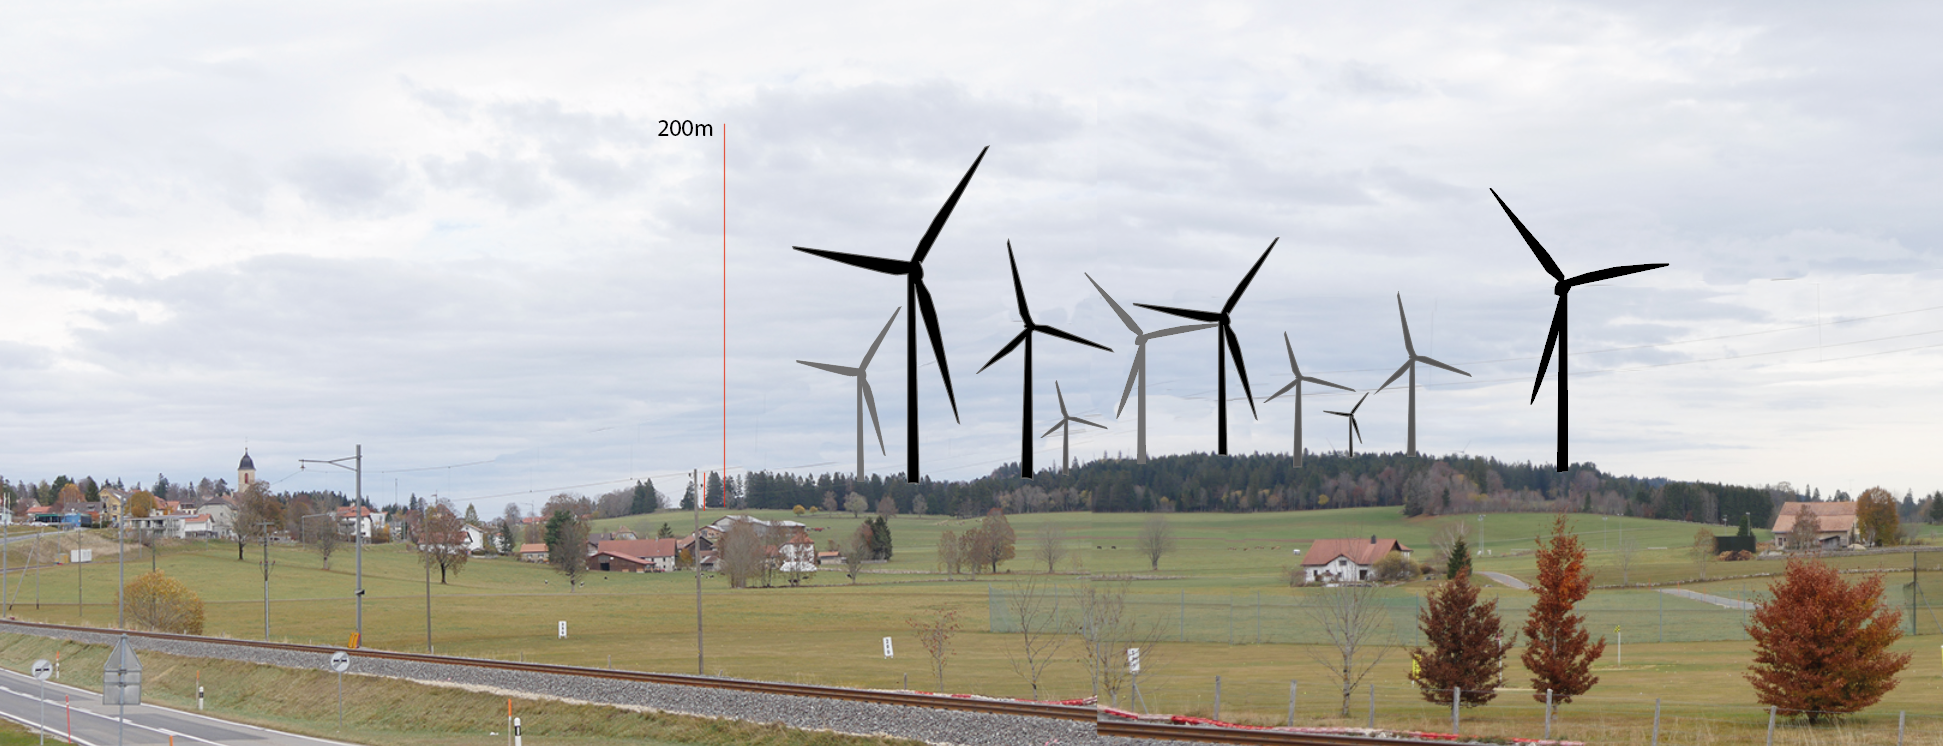 Paysage des Bois imaginé avec une dizaine d'éoliennes de 200 mètres de haut.